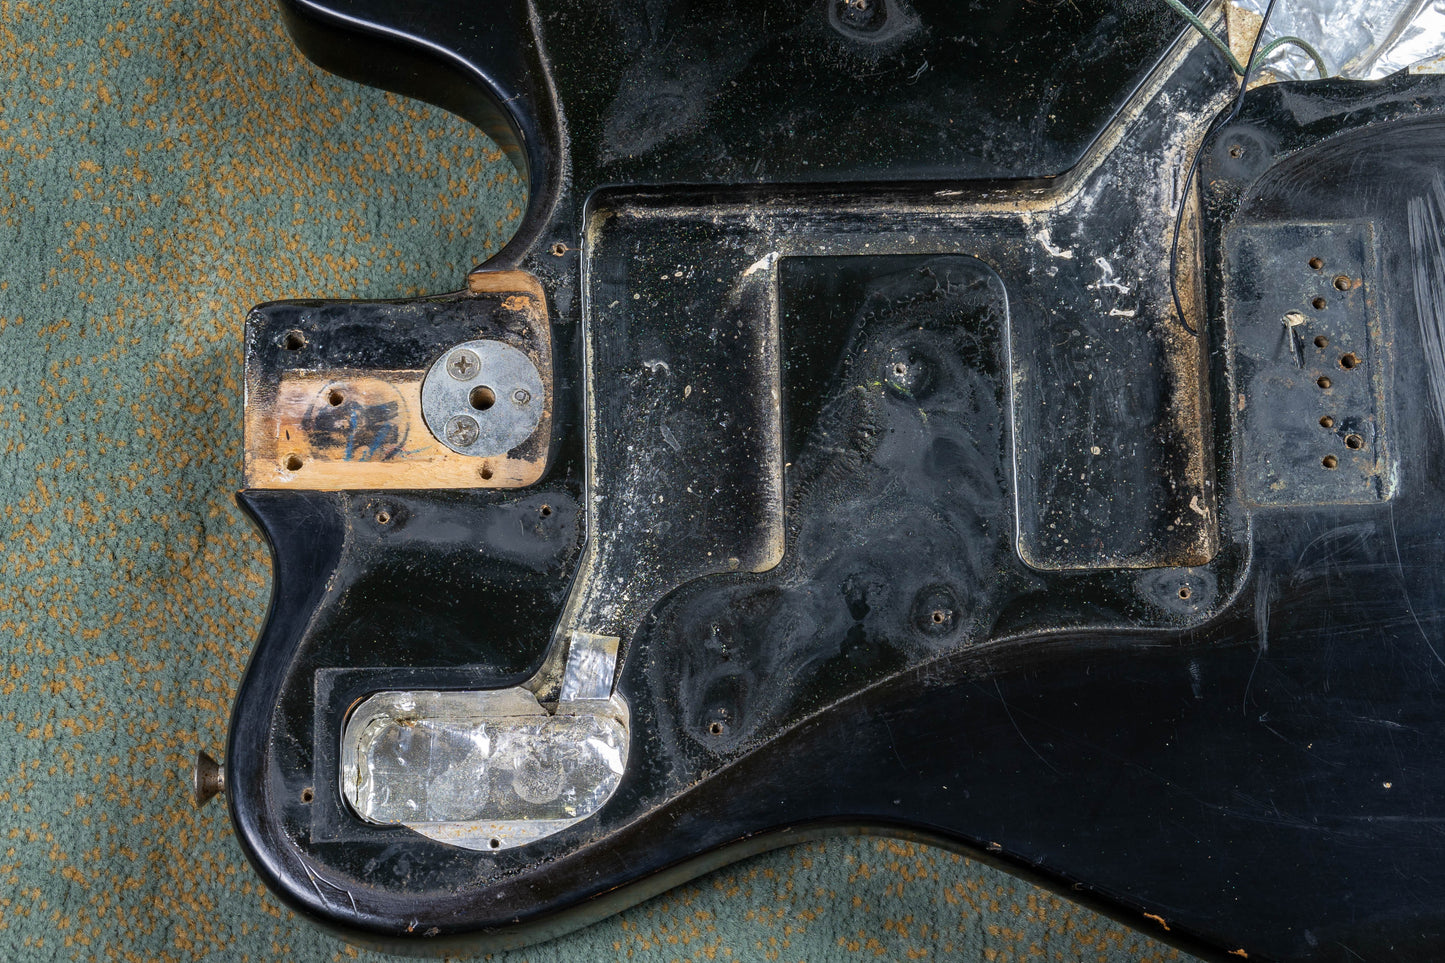 Fender Telecaster Deluxe Black 1975